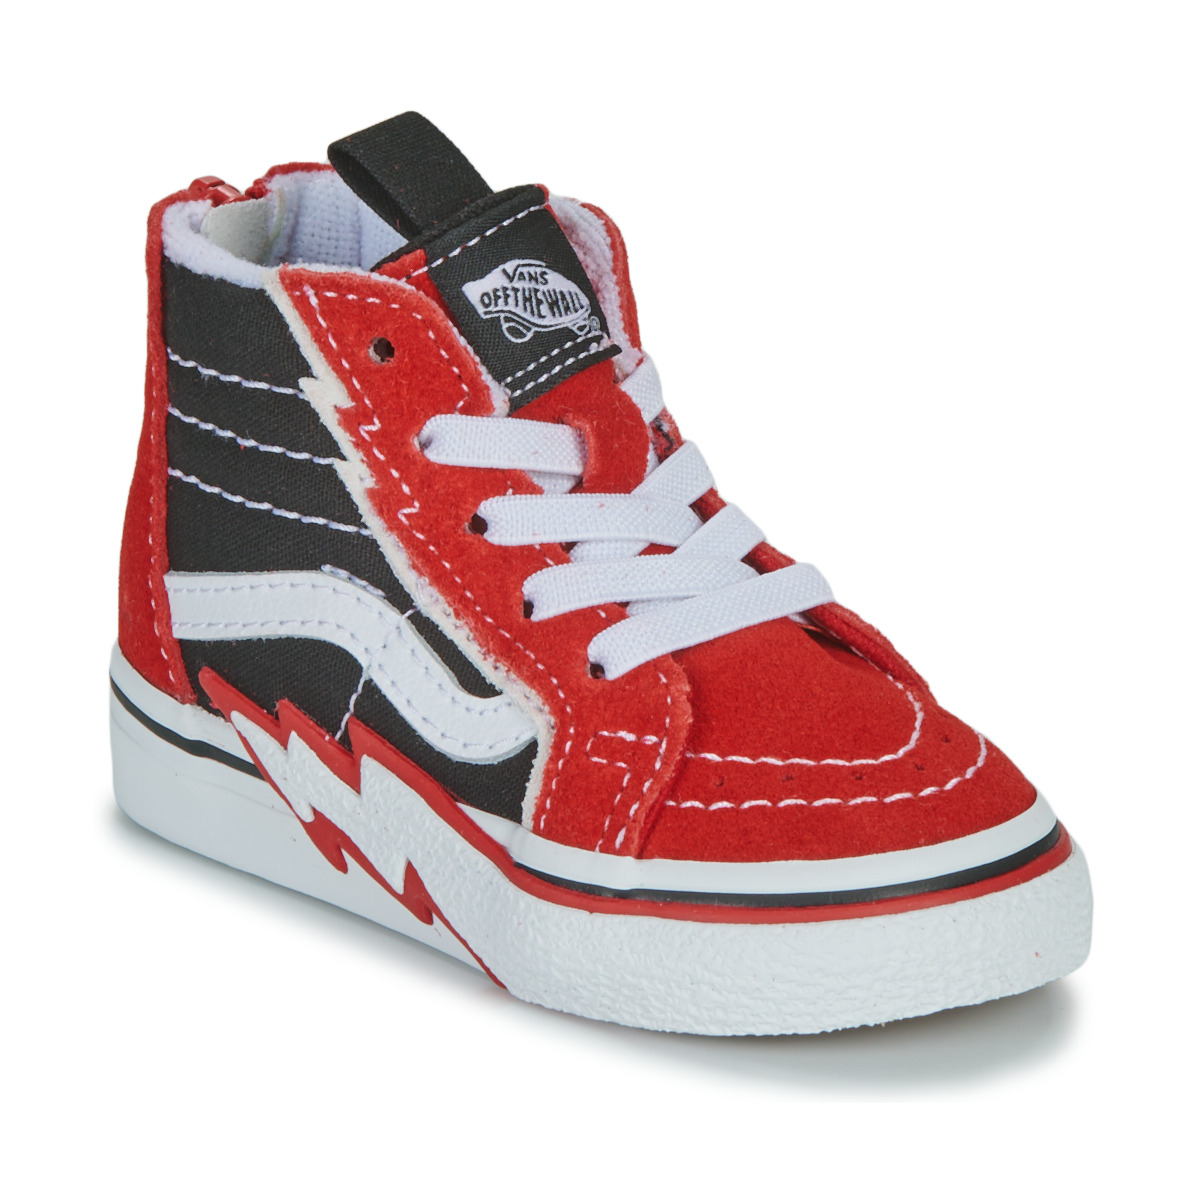 Παπούτσια Αγόρι Ψηλά Sneakers Vans TD SK8-Hi Zip Bolt Black / Red